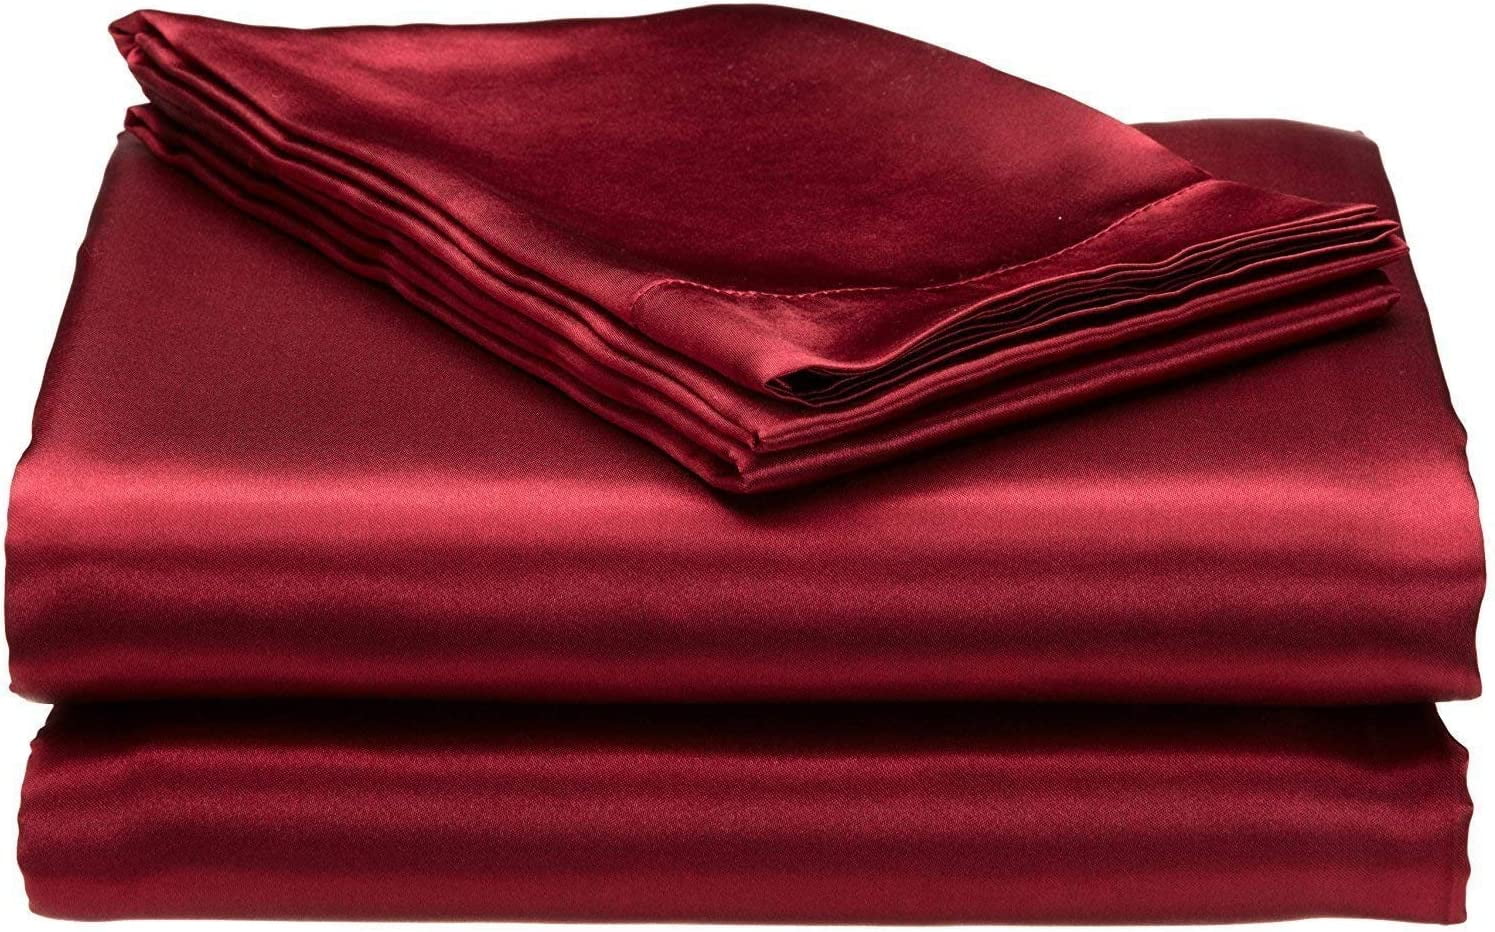 sheet set for 4 inch deep pocket mattress